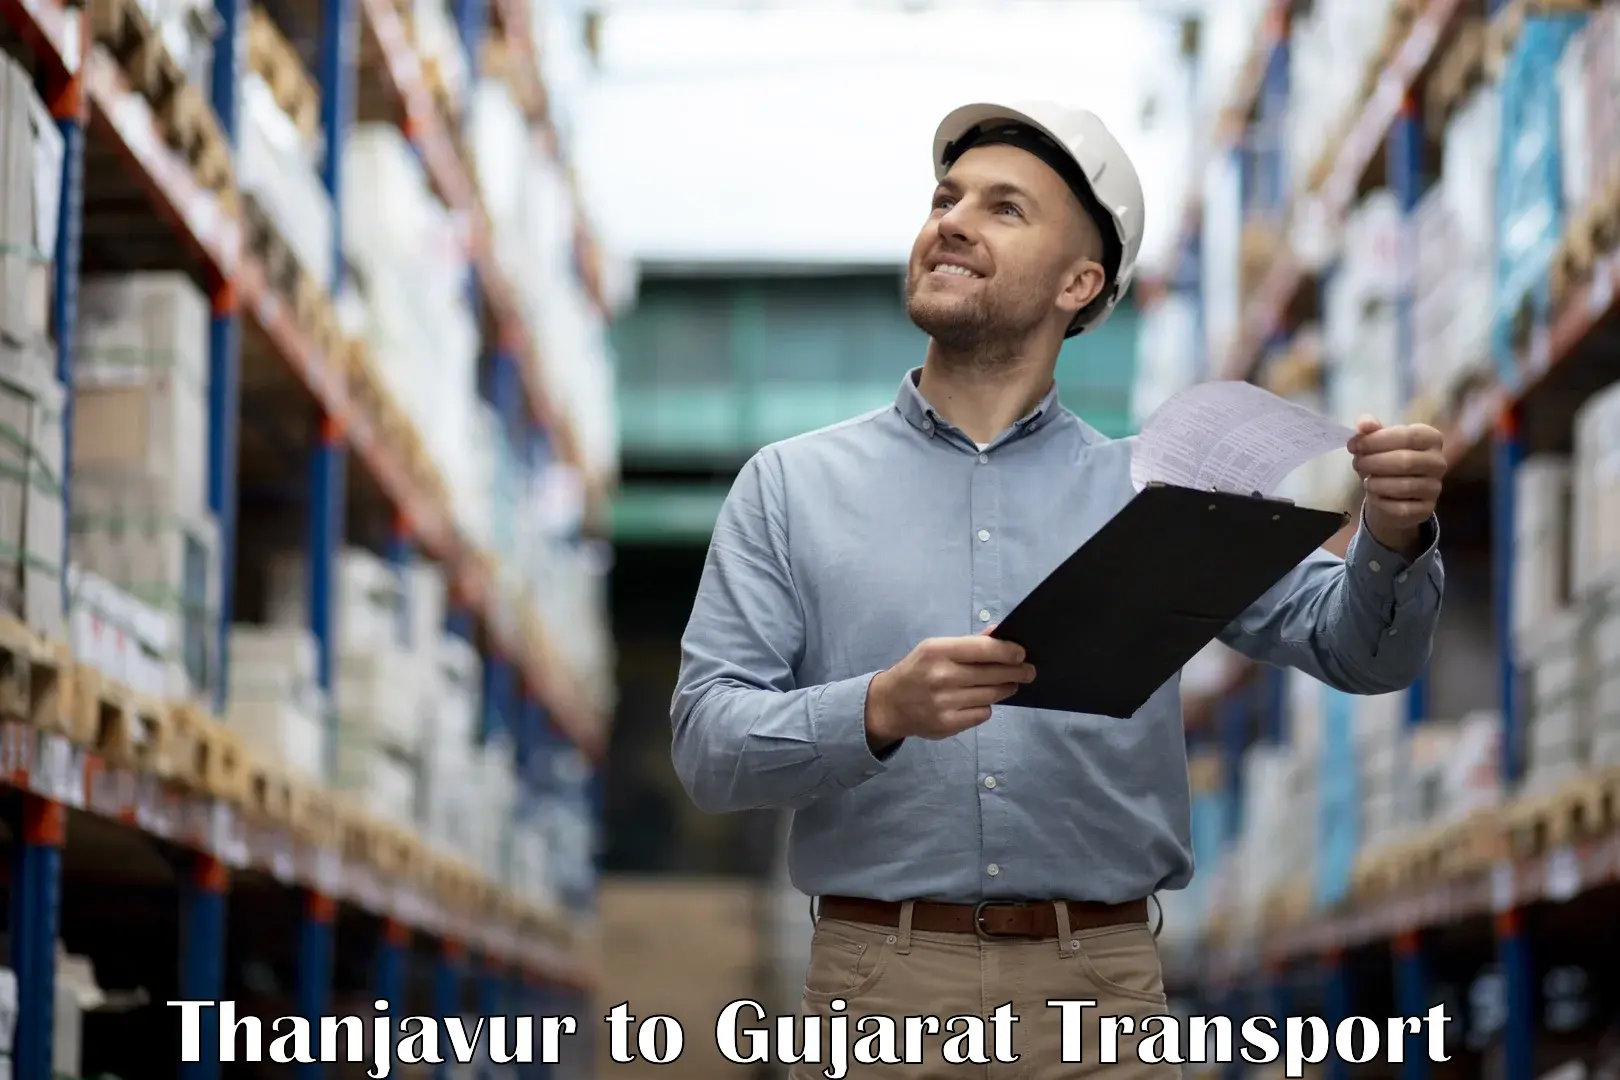 Furniture transport service Thanjavur to Gandhinagar